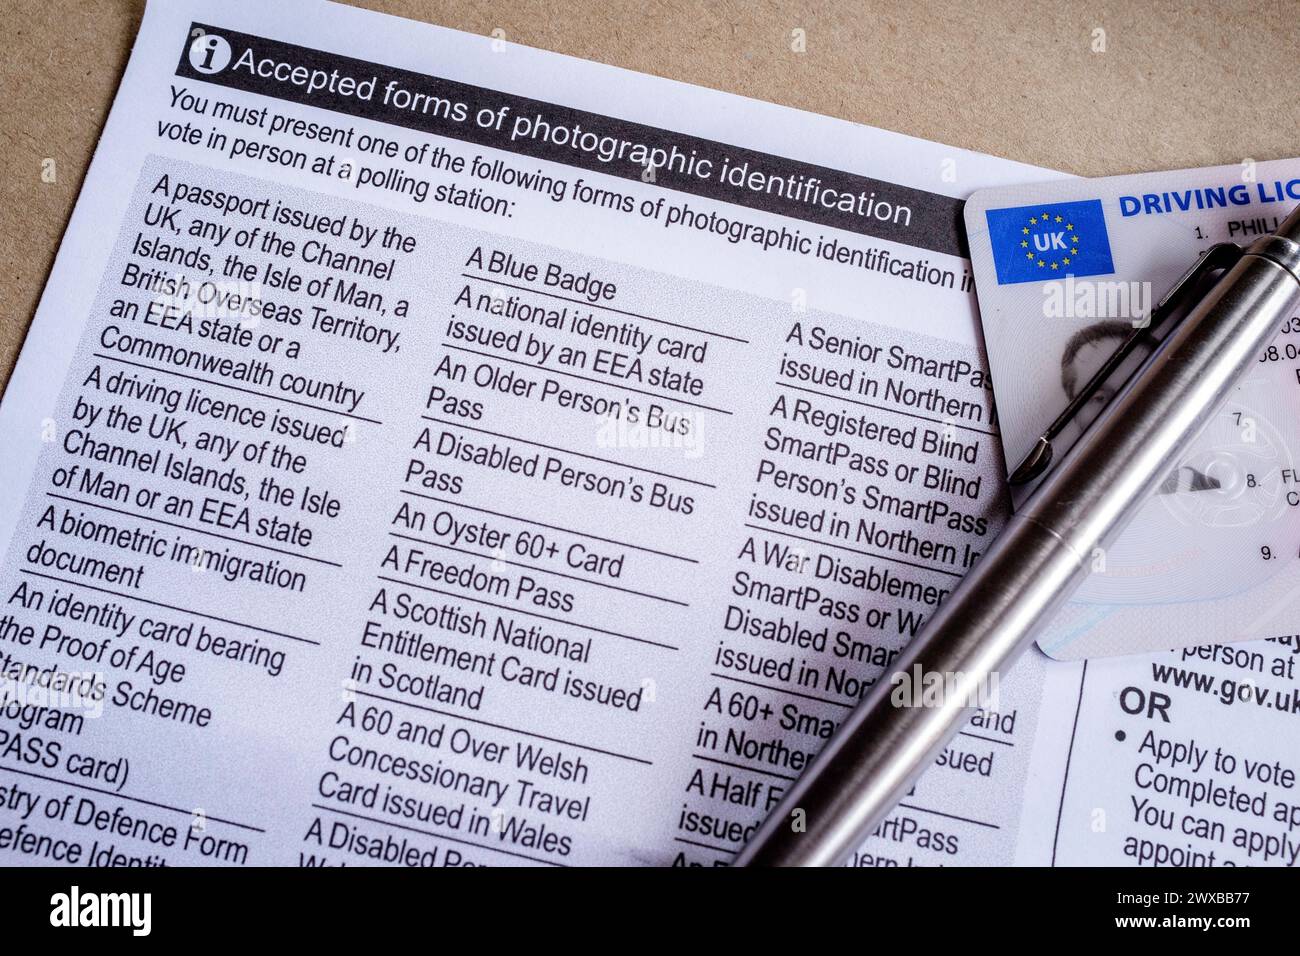 Scheda elettorale per le elezioni della Greater London Authority che dichiara le forme accettate di identificazione fotografica per gli elettori. Foto Stock